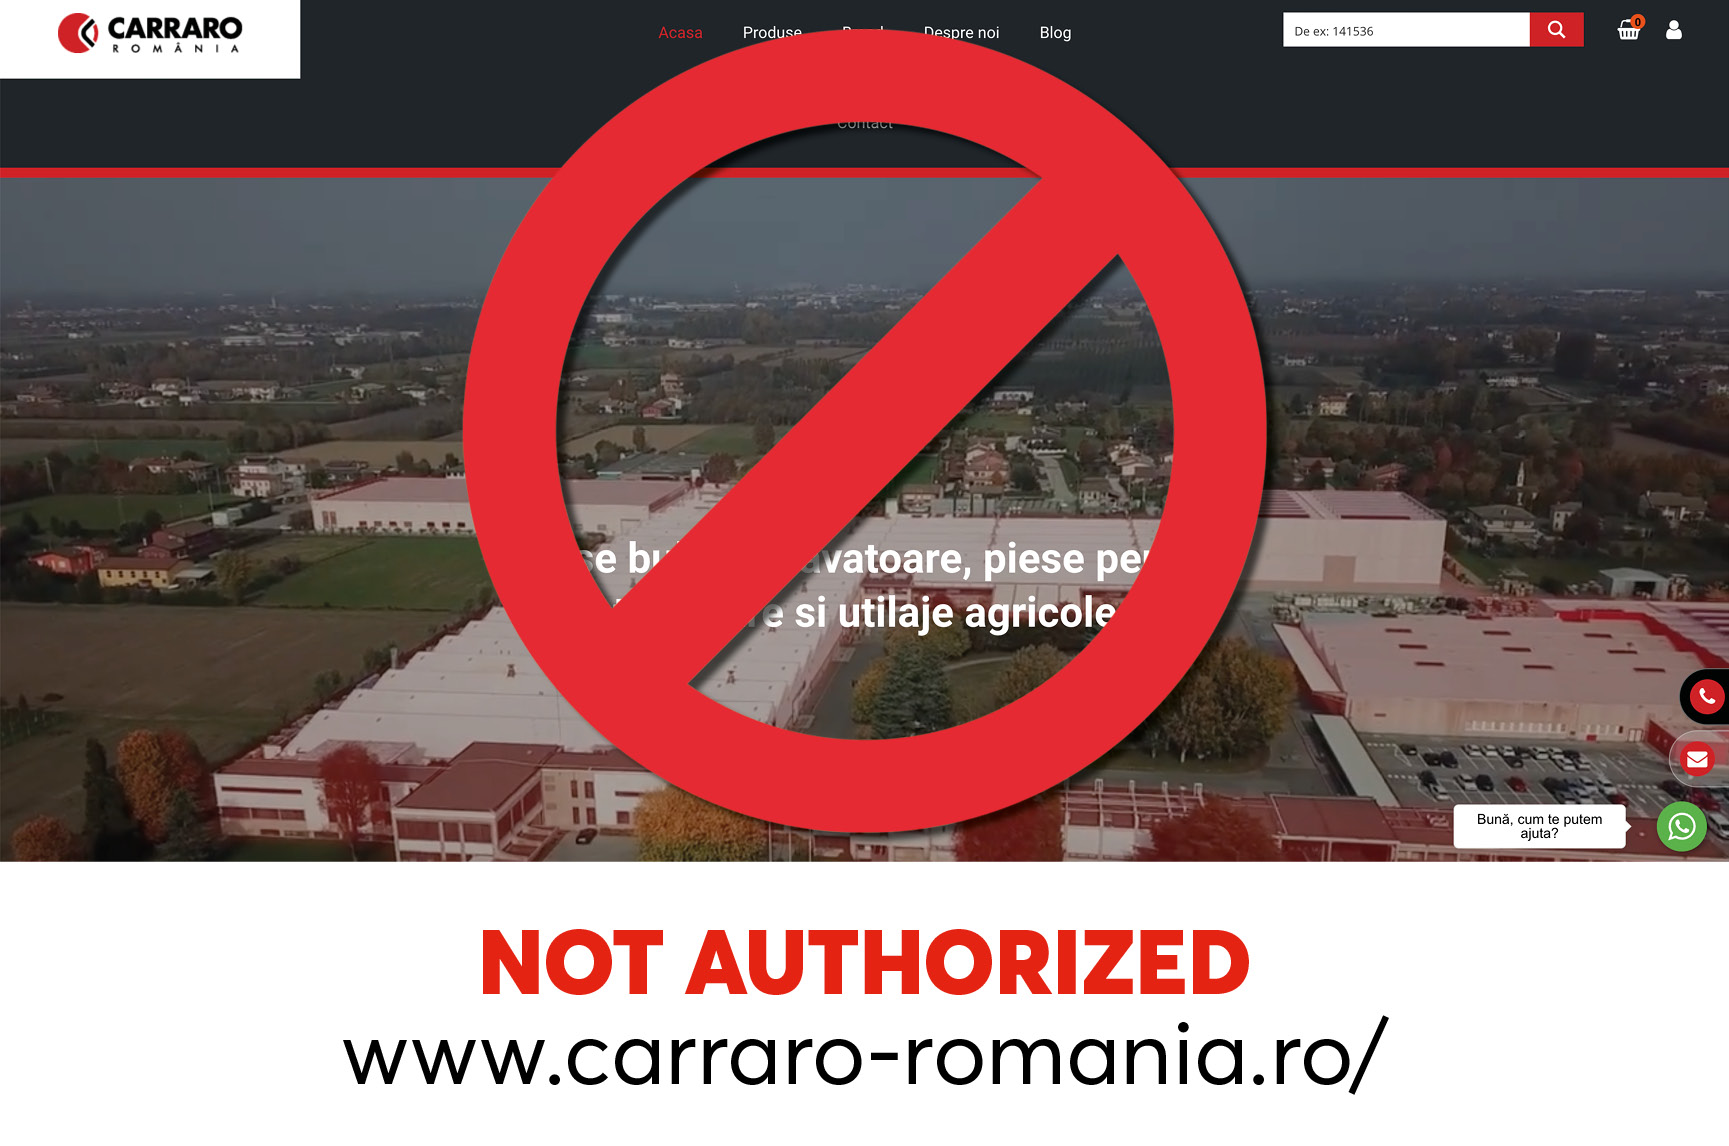 www.carraro-romania.ro: NOT AUTHORIZED!